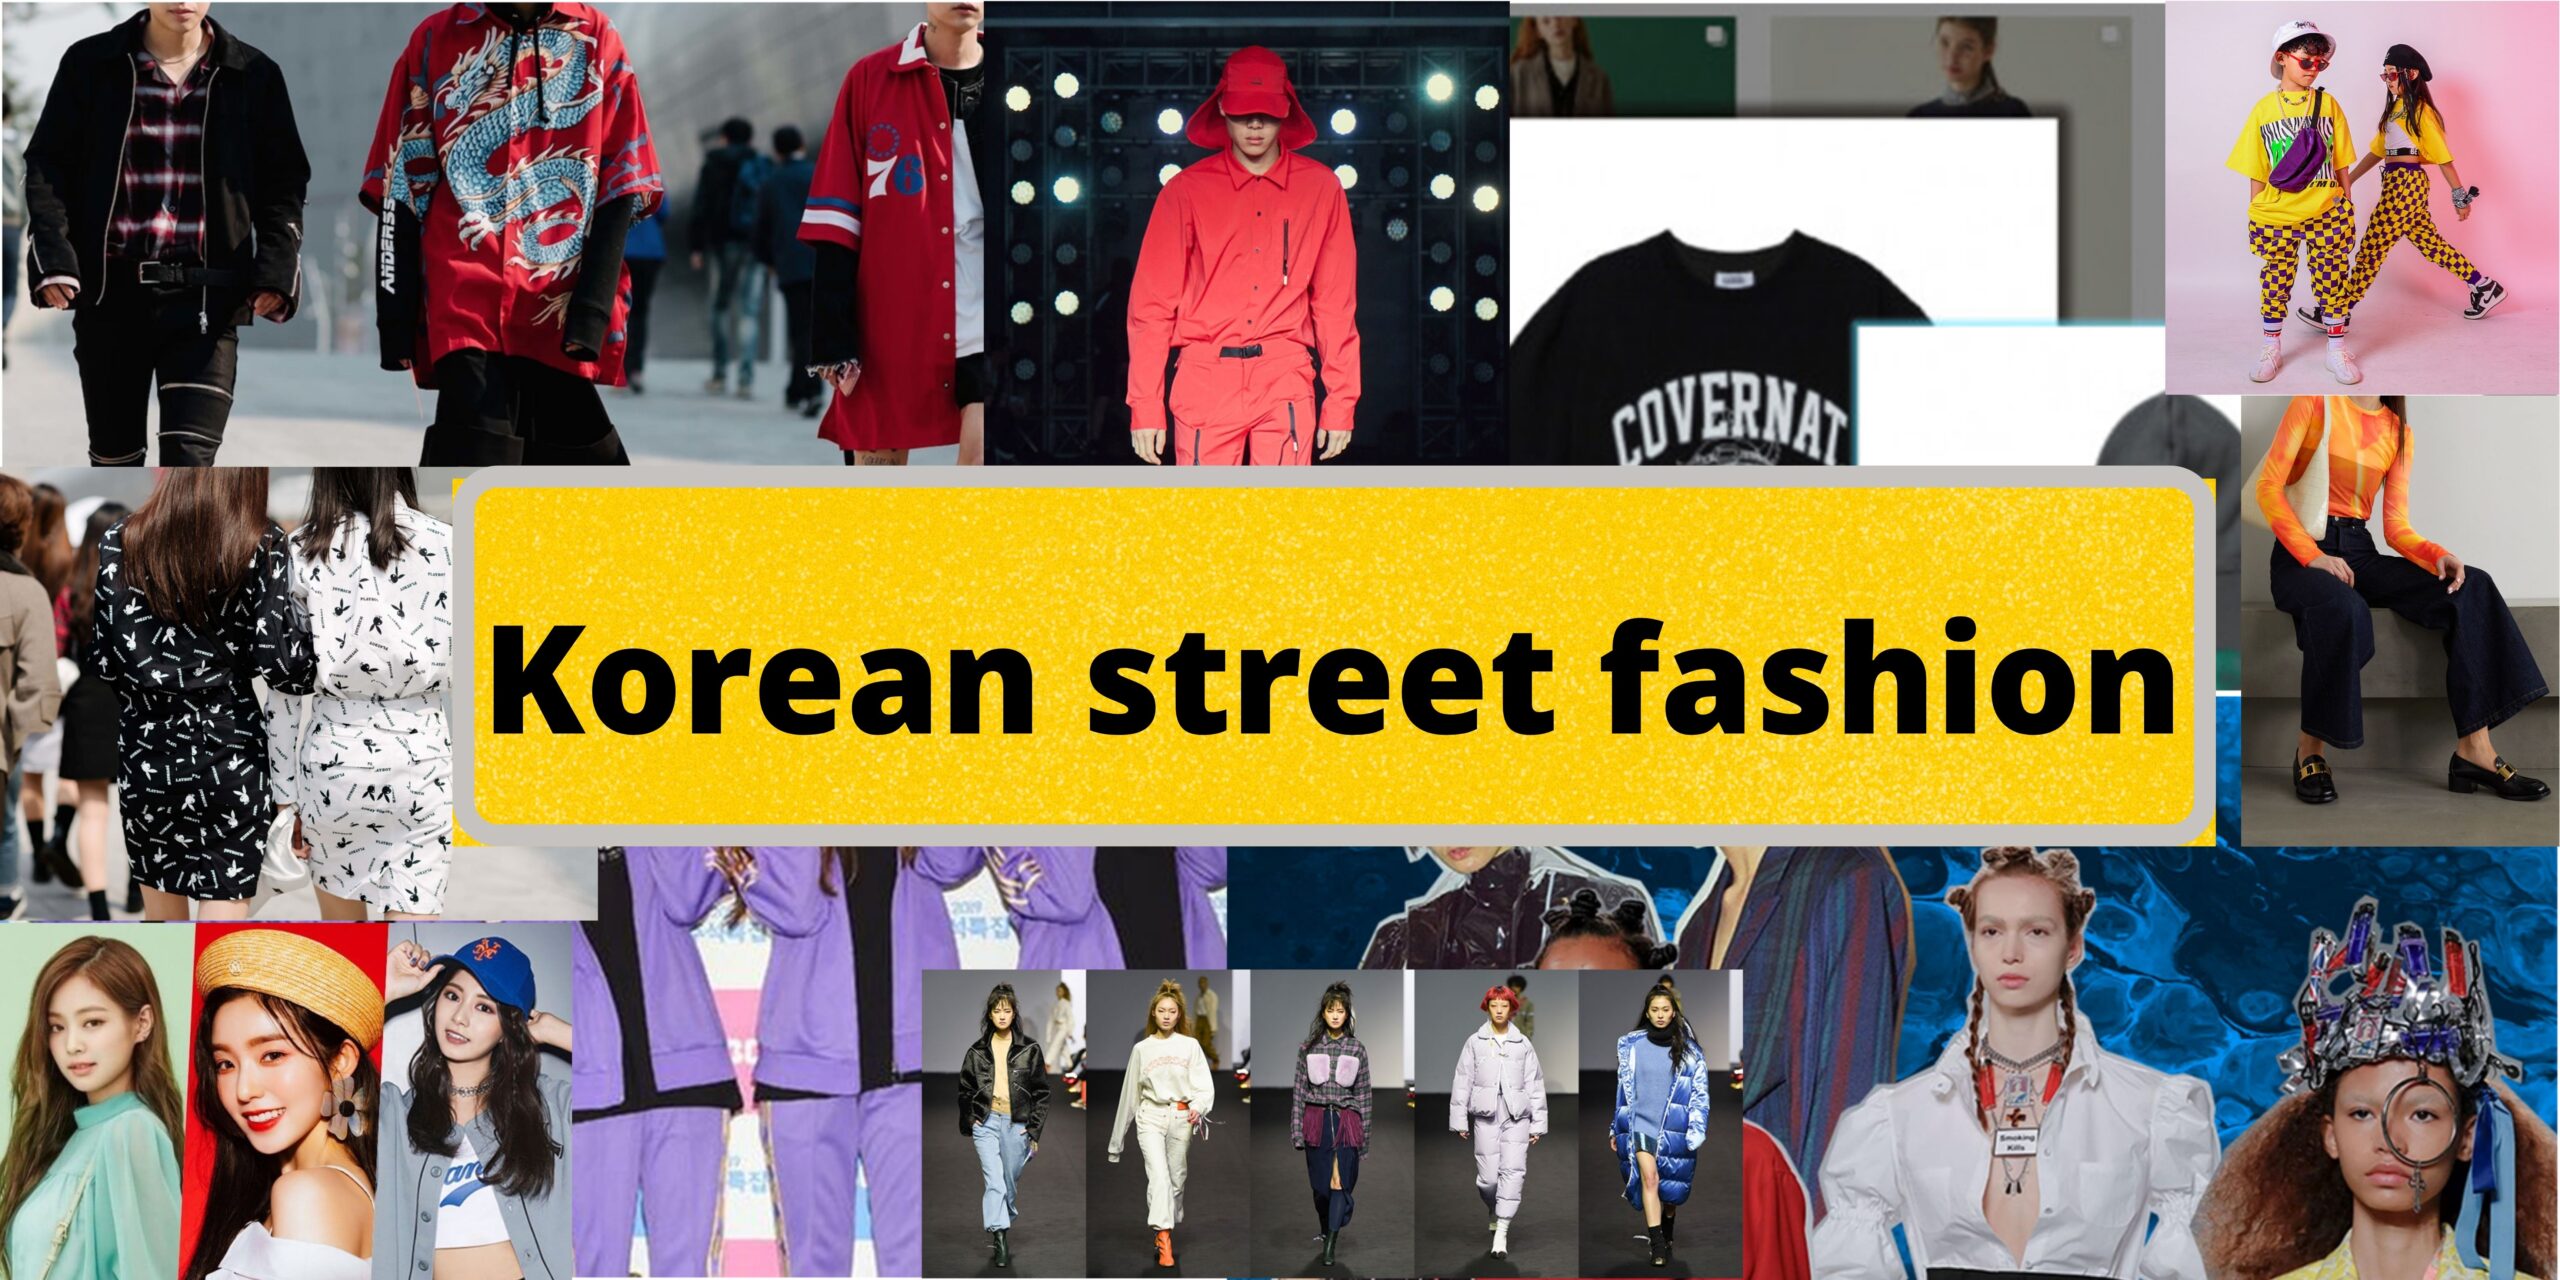 Korean street fashion scaled